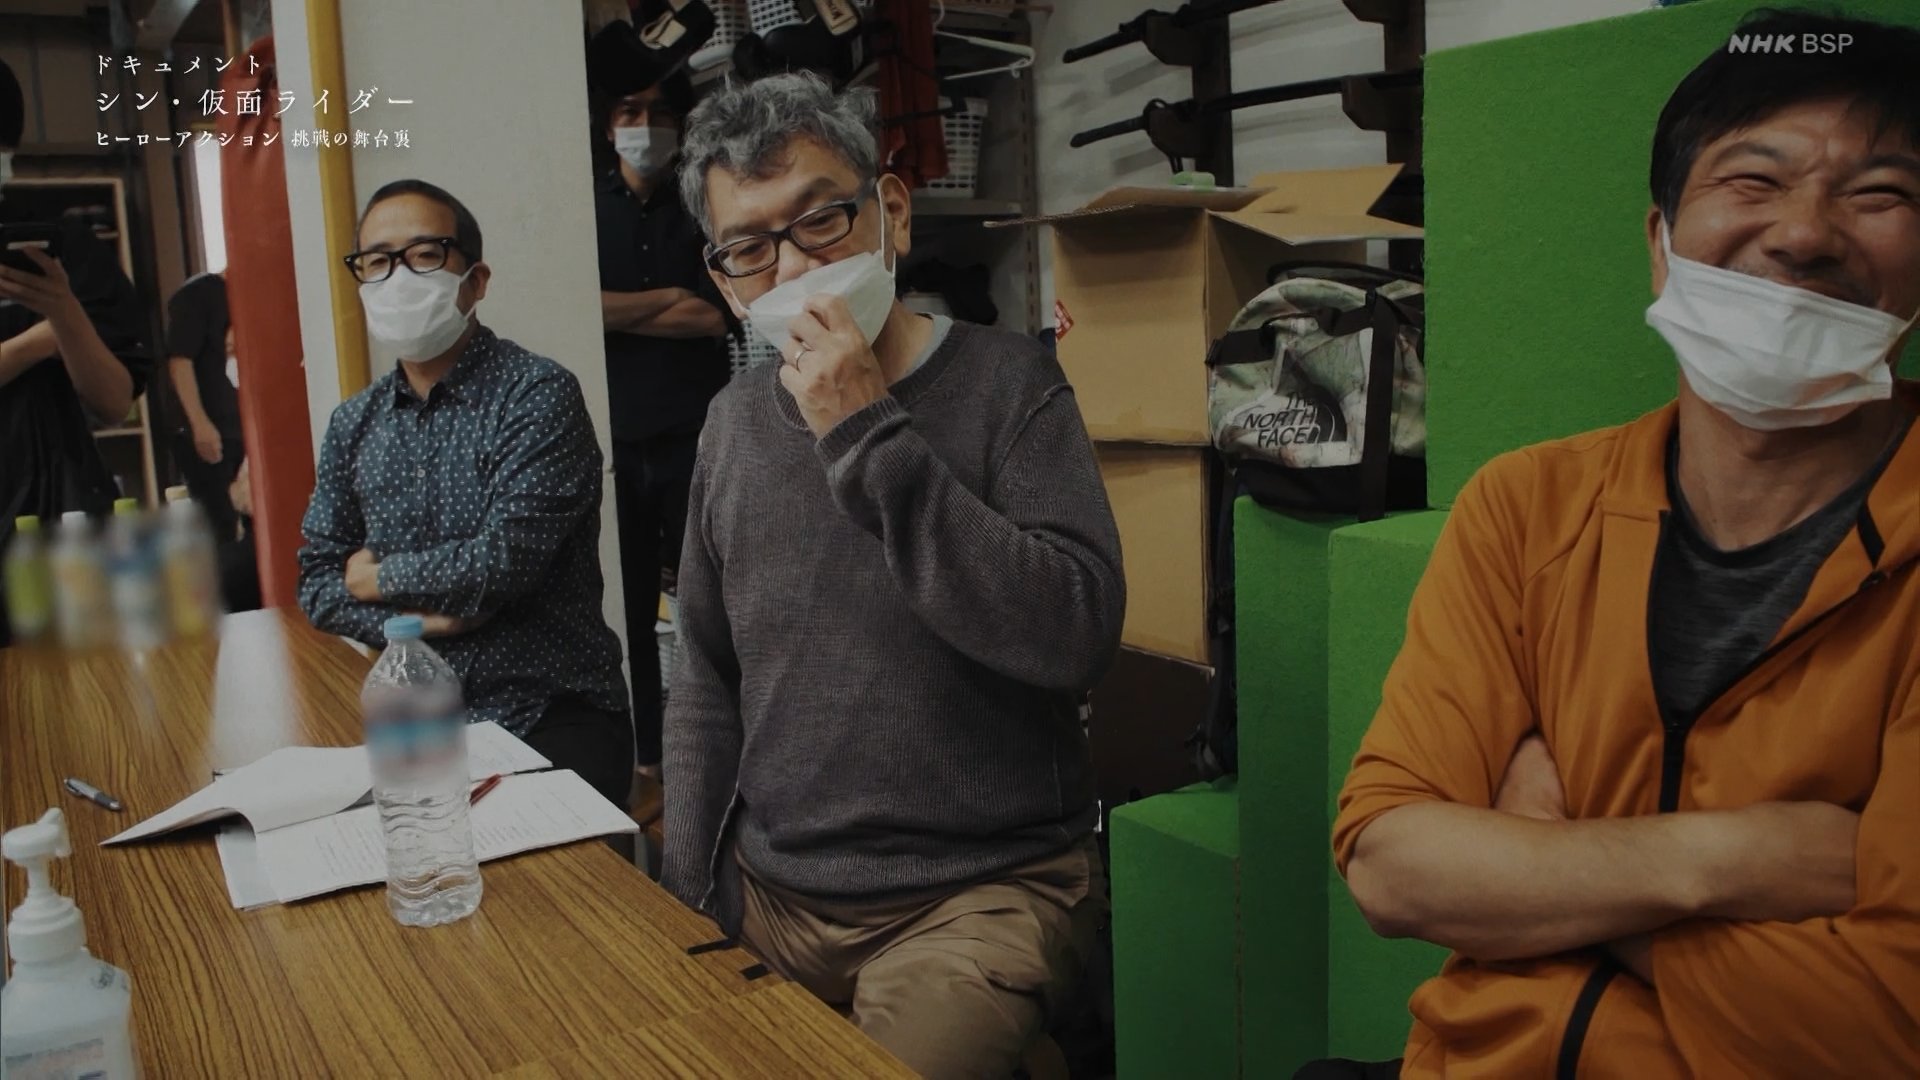 El cineasta Hideaki Anno, tomará un descanso después de 30 años 7